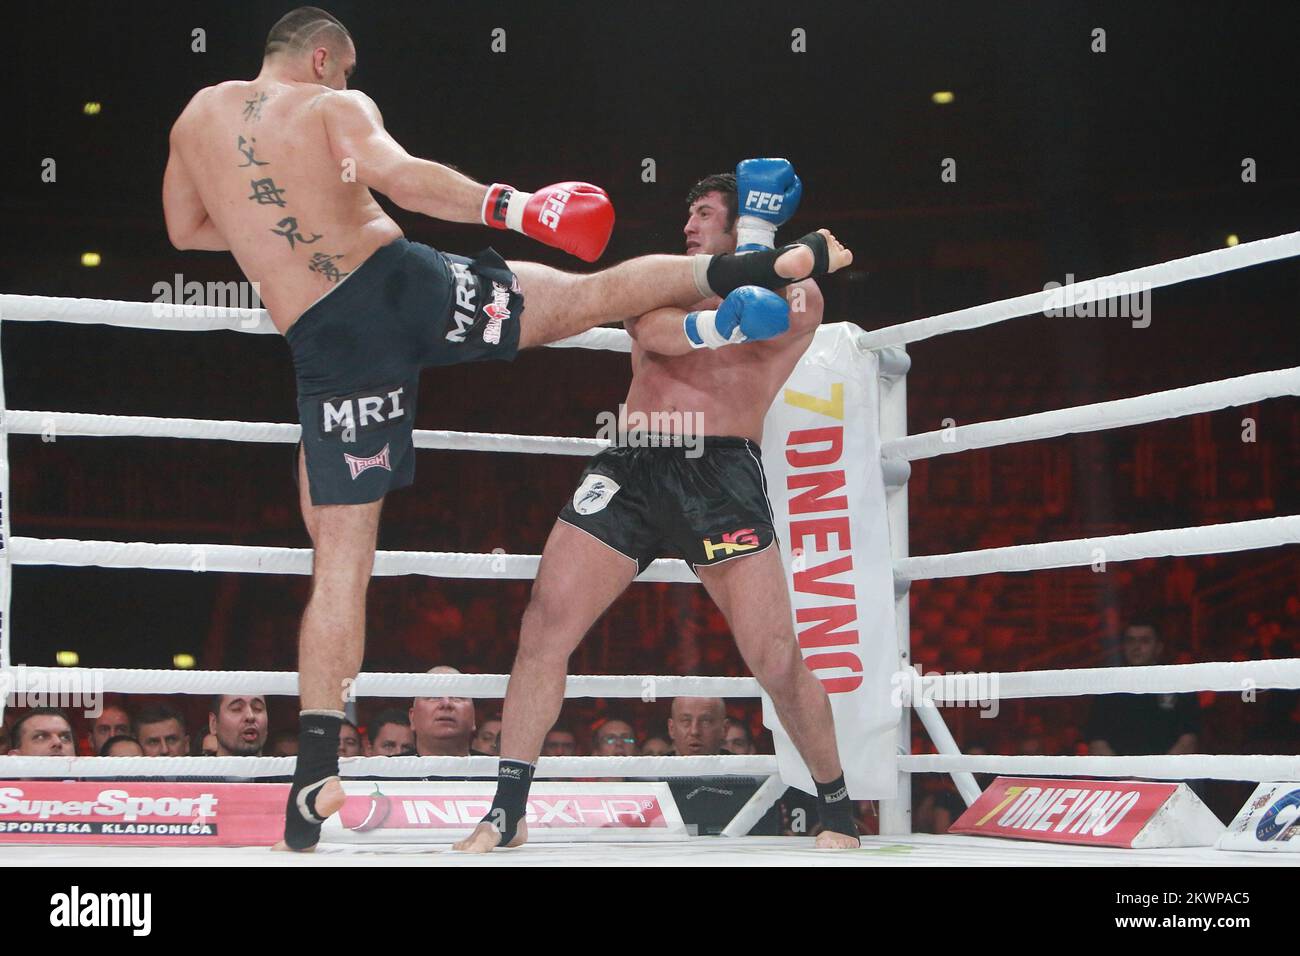 25.10.2013., Arena agreb, Zagreb - Final Fight Championship 8, Ali Cenik - Mladen Brestovac. Foto: Dalibor Urukalovic/PIXSELL Stockfoto